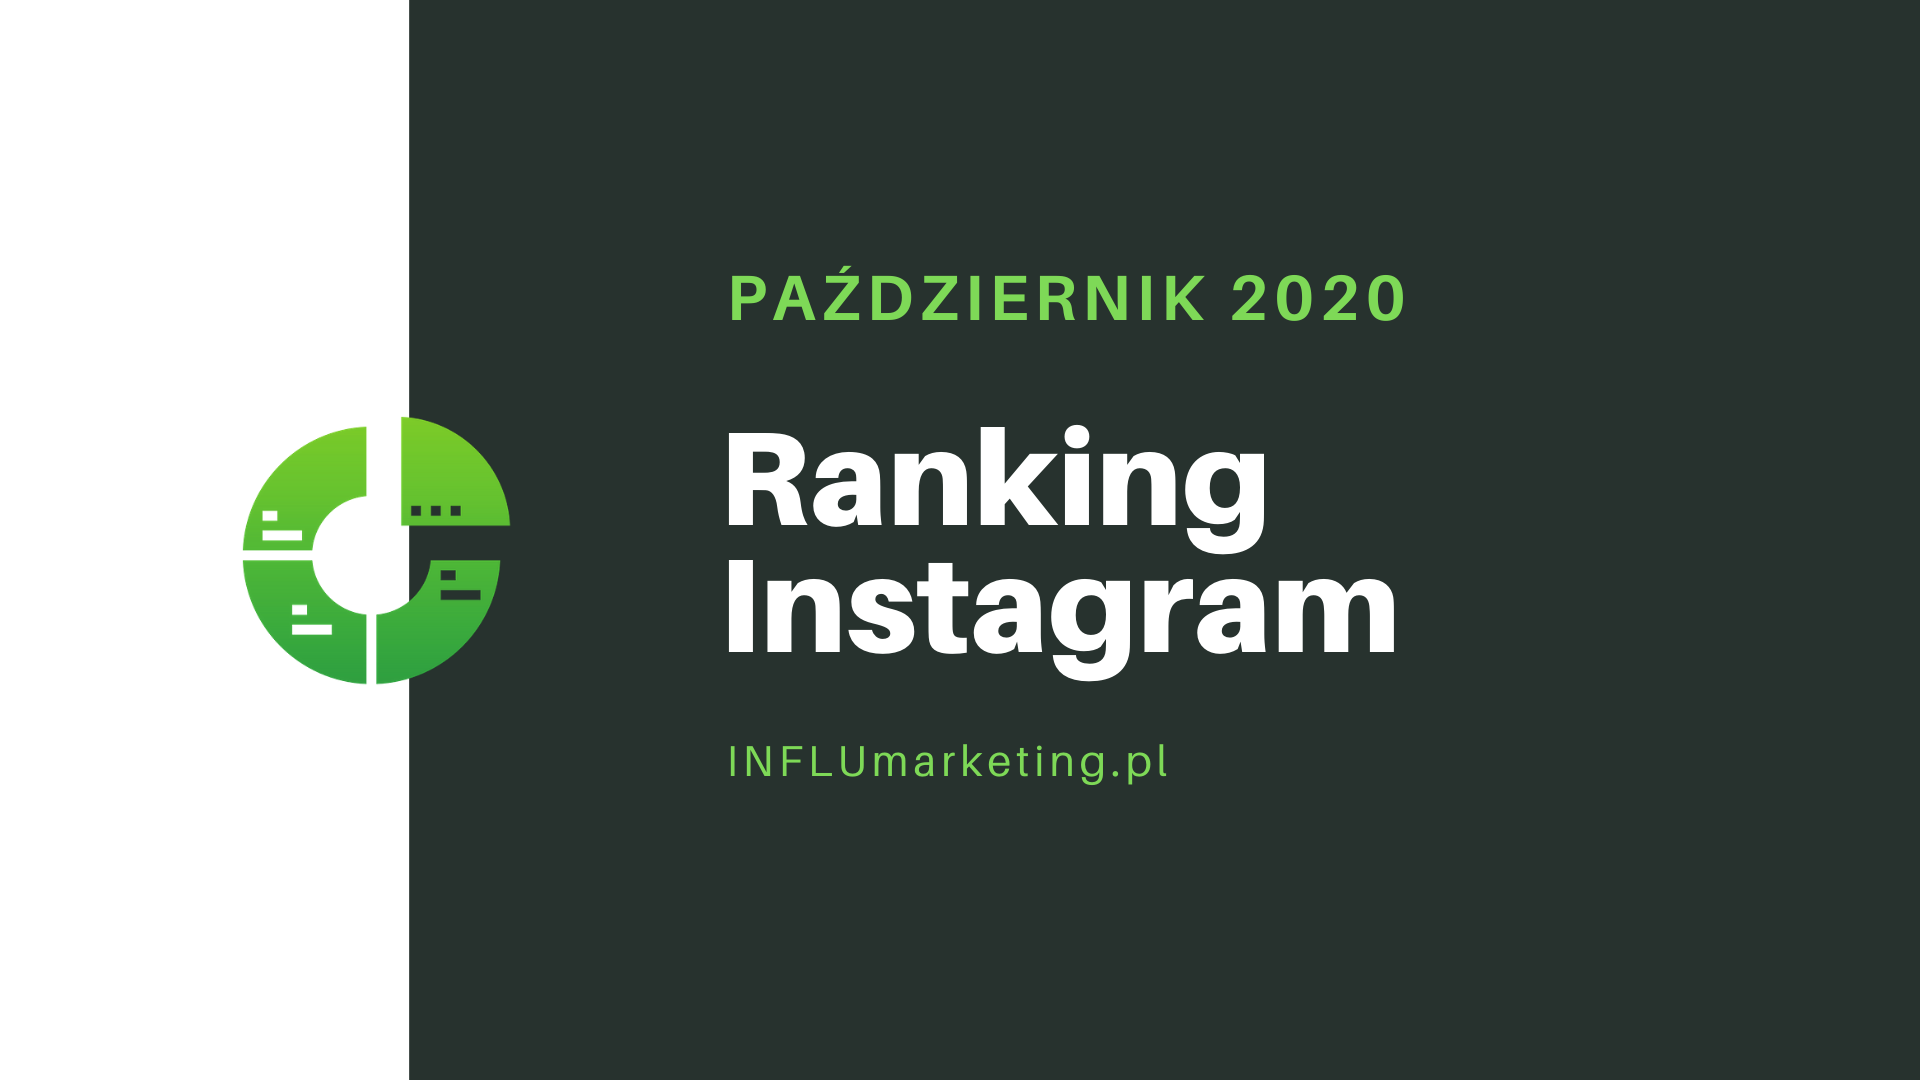 Ranking Instagram 2020 październik cover photo